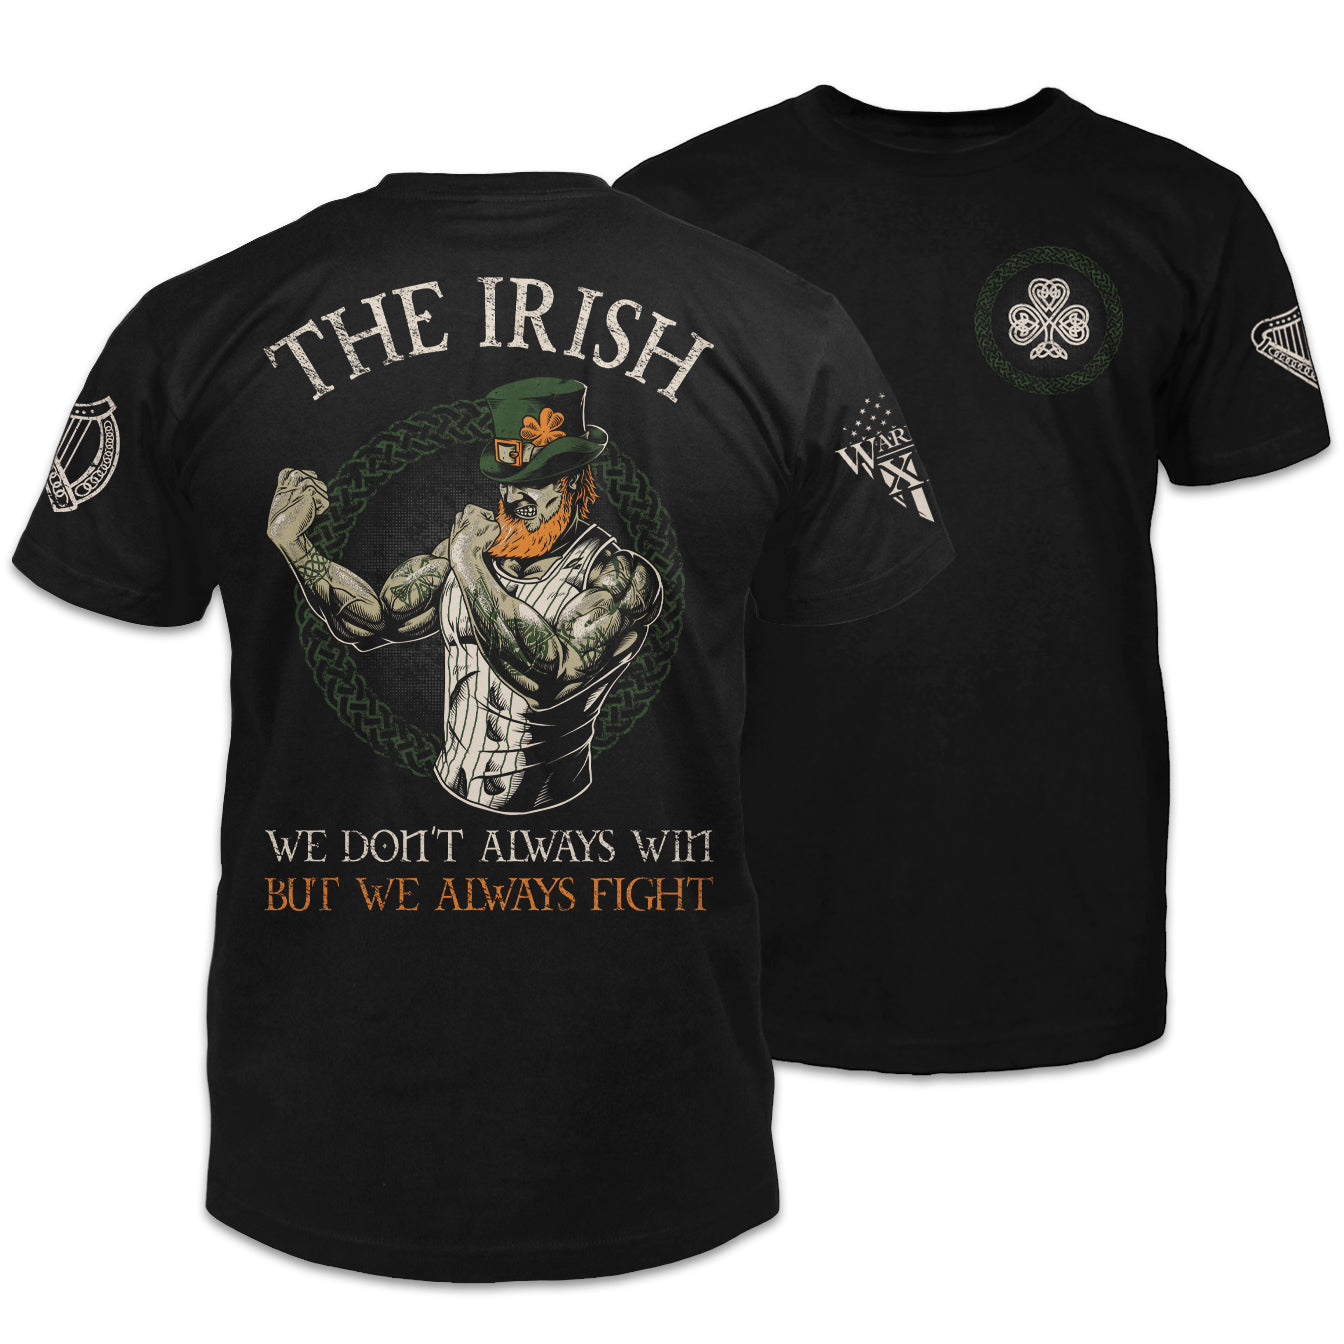 Fighting Irish Grandpa Short Sleeve T Shirt